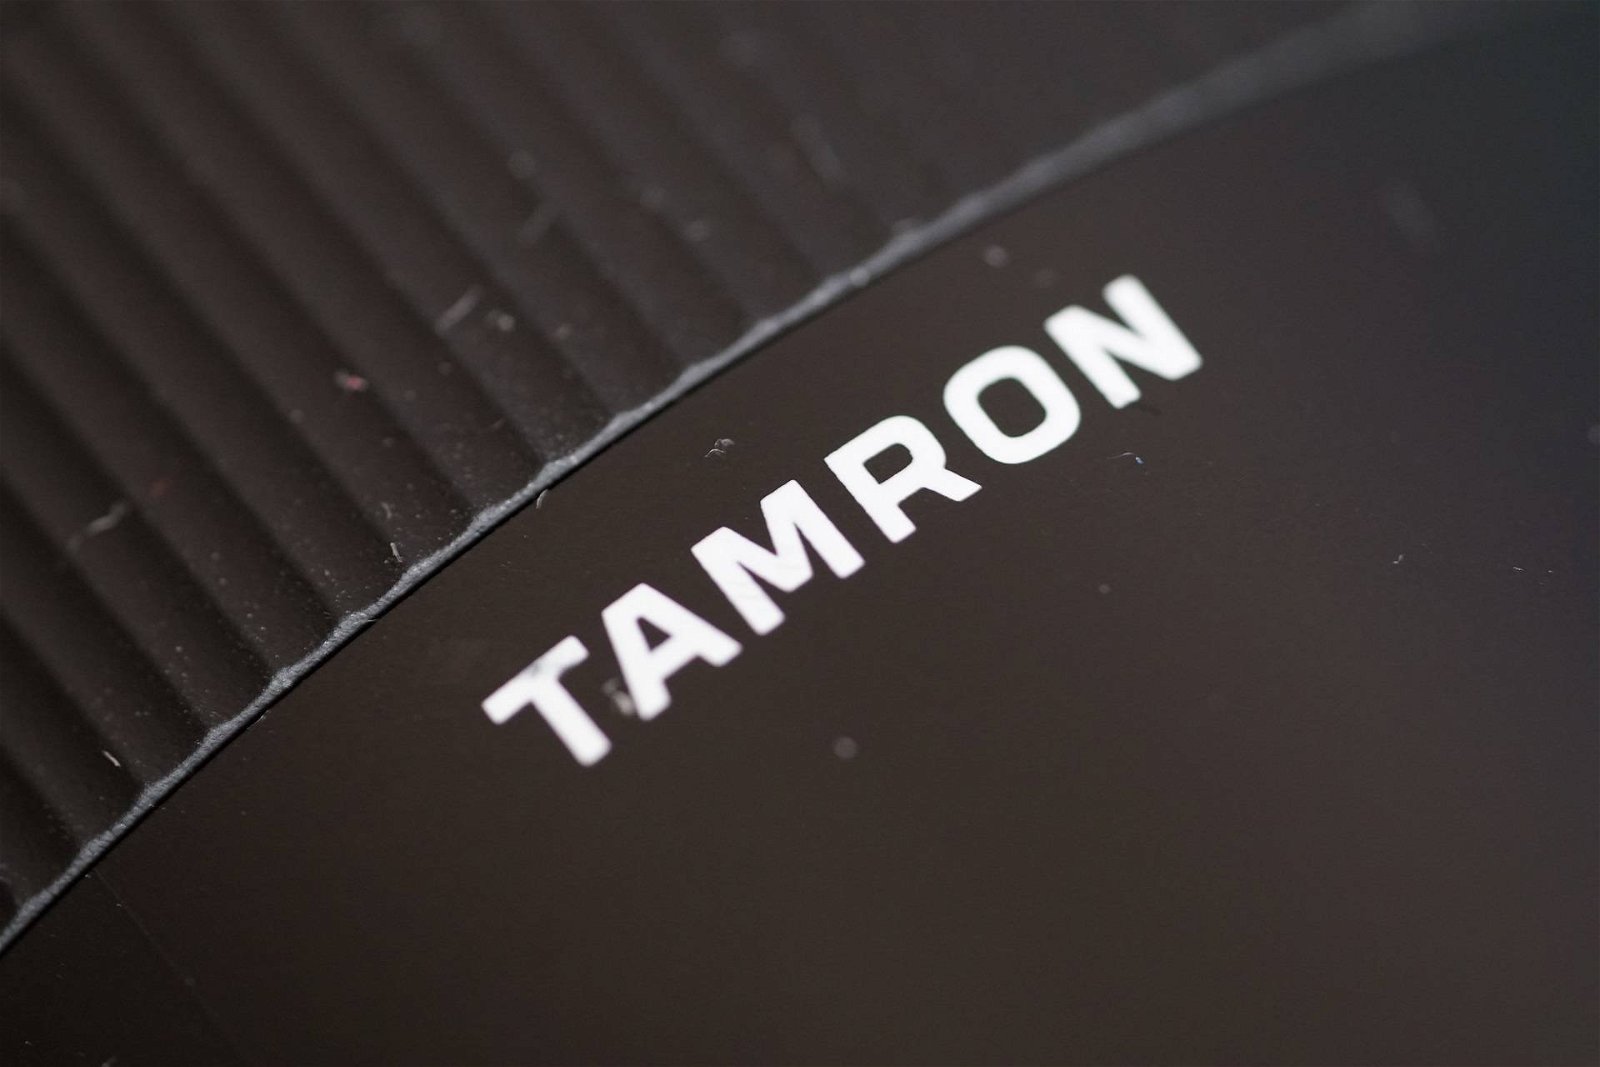 Immagine di Tamron, ufficiale il nuovo obiettivo 17-28mm f/2.8 per Sony